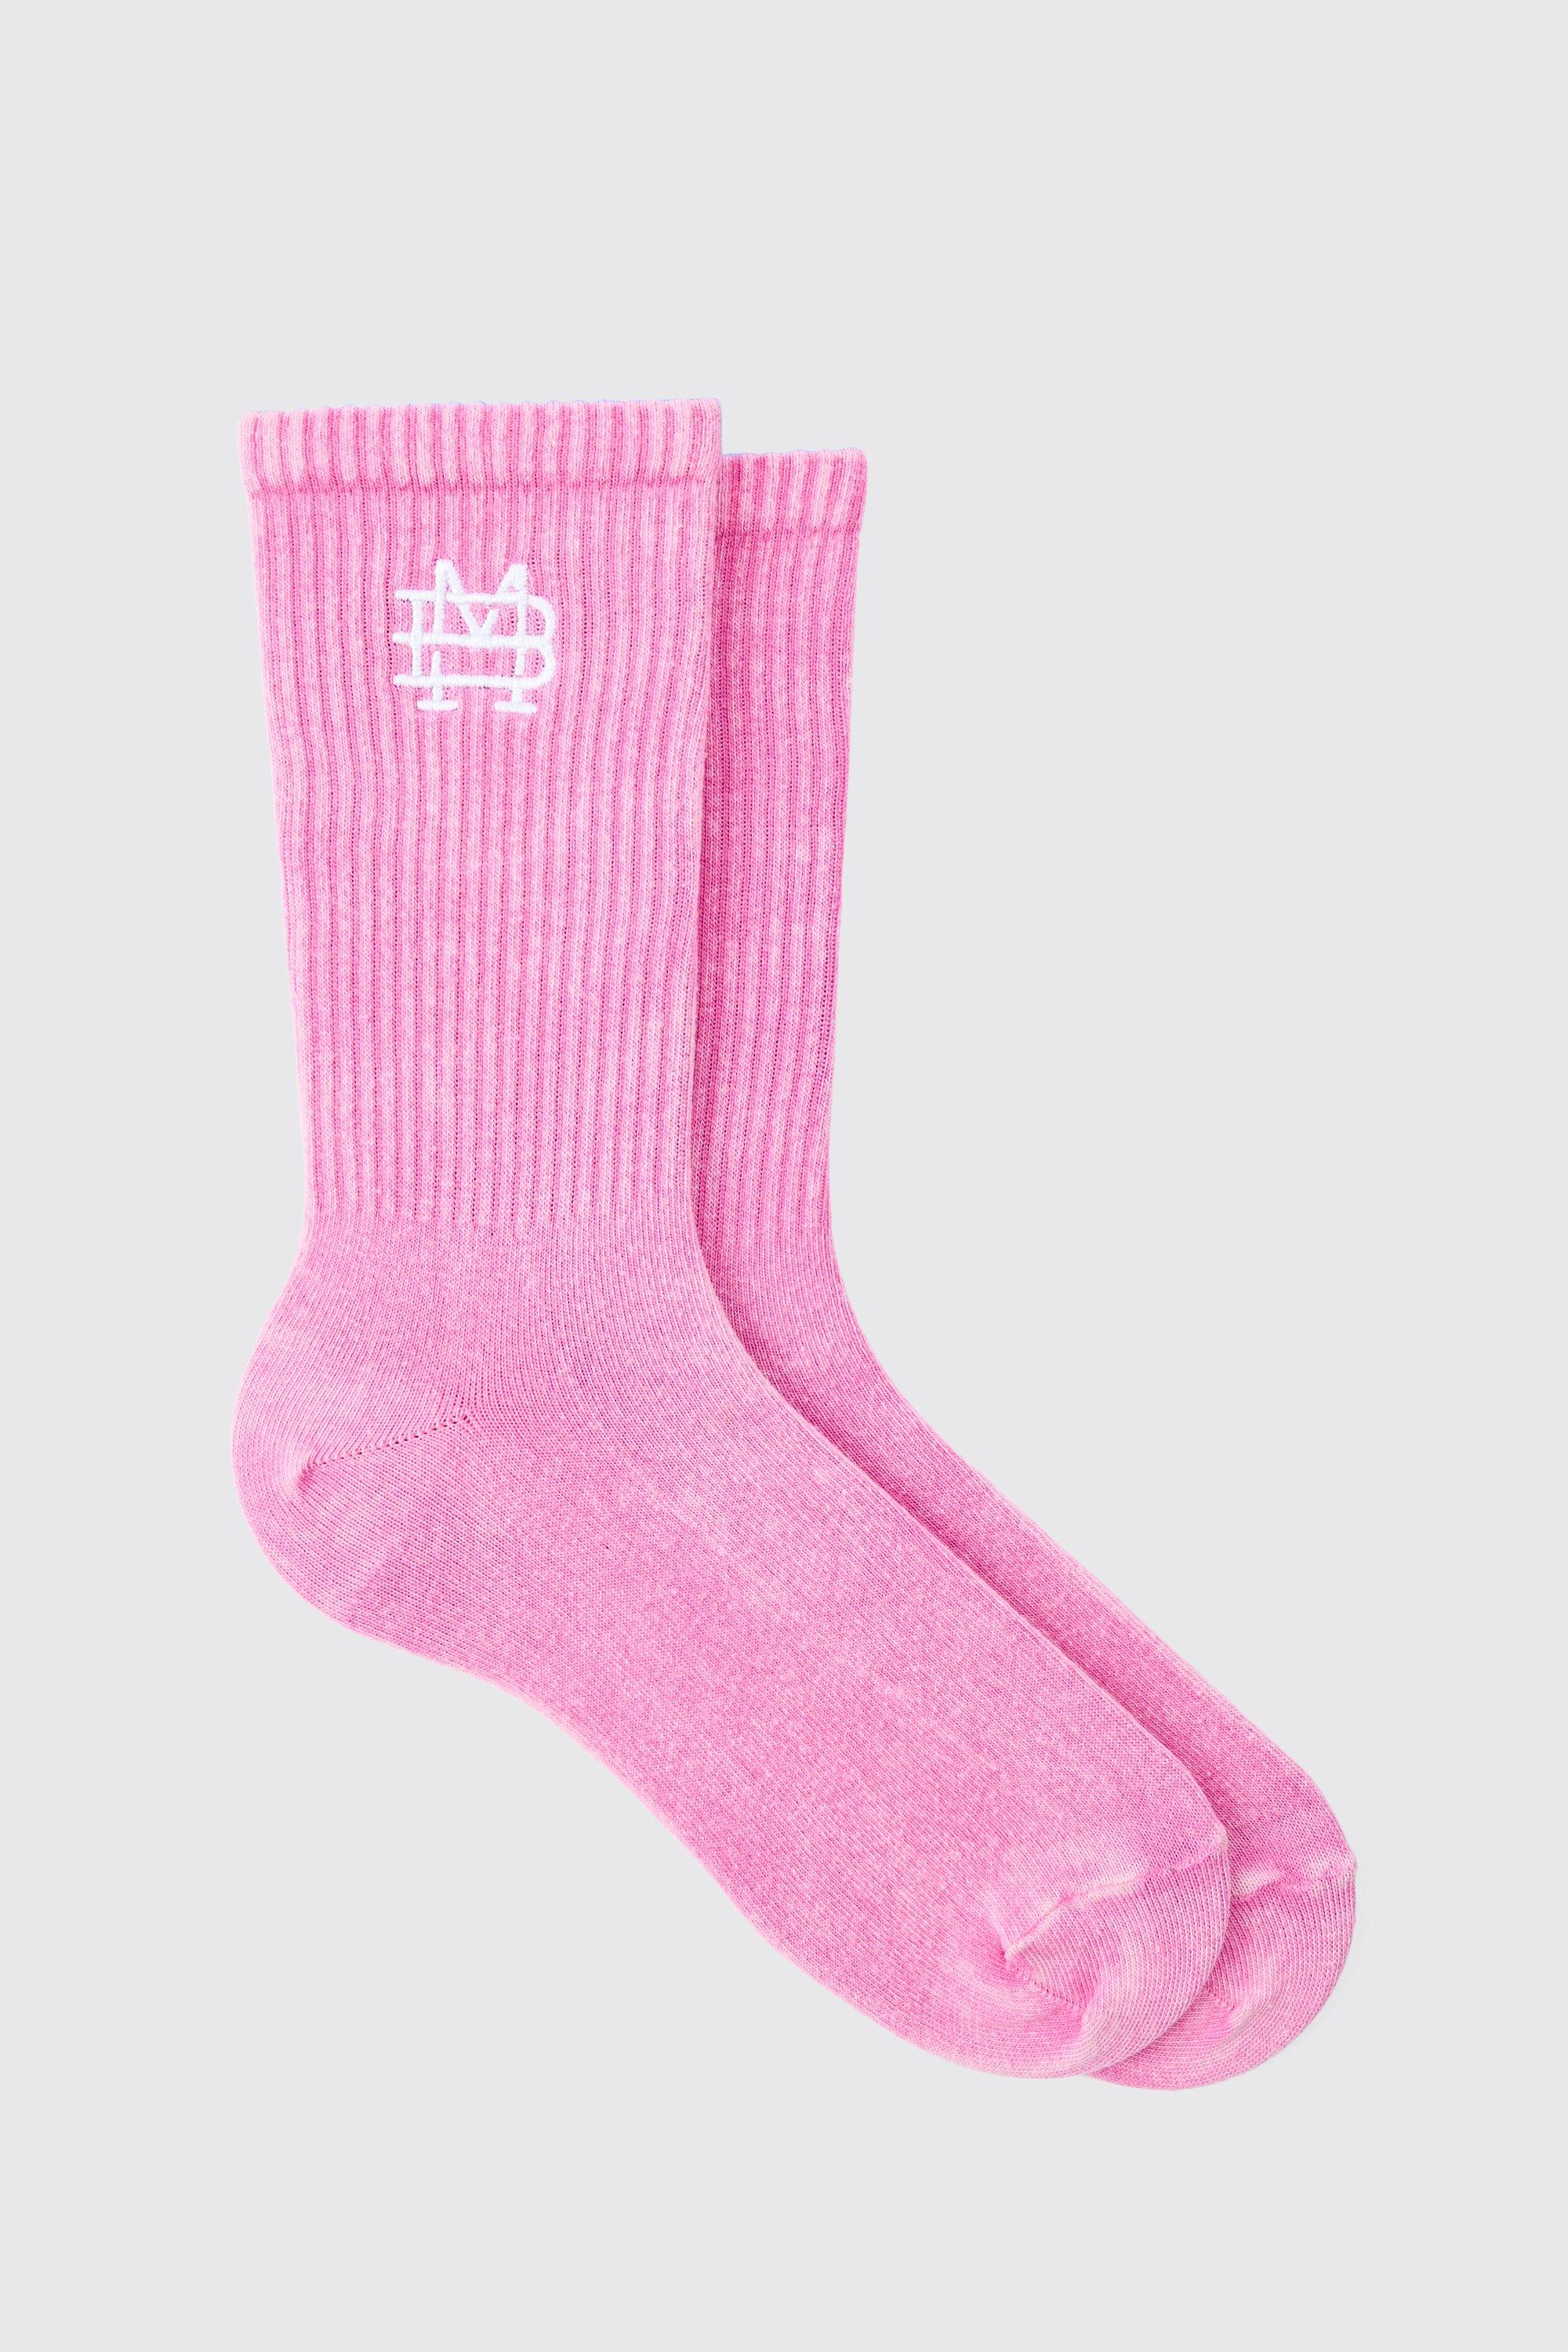 Image of Acid Wash Bm Embroidered Socks In Pink, Pink